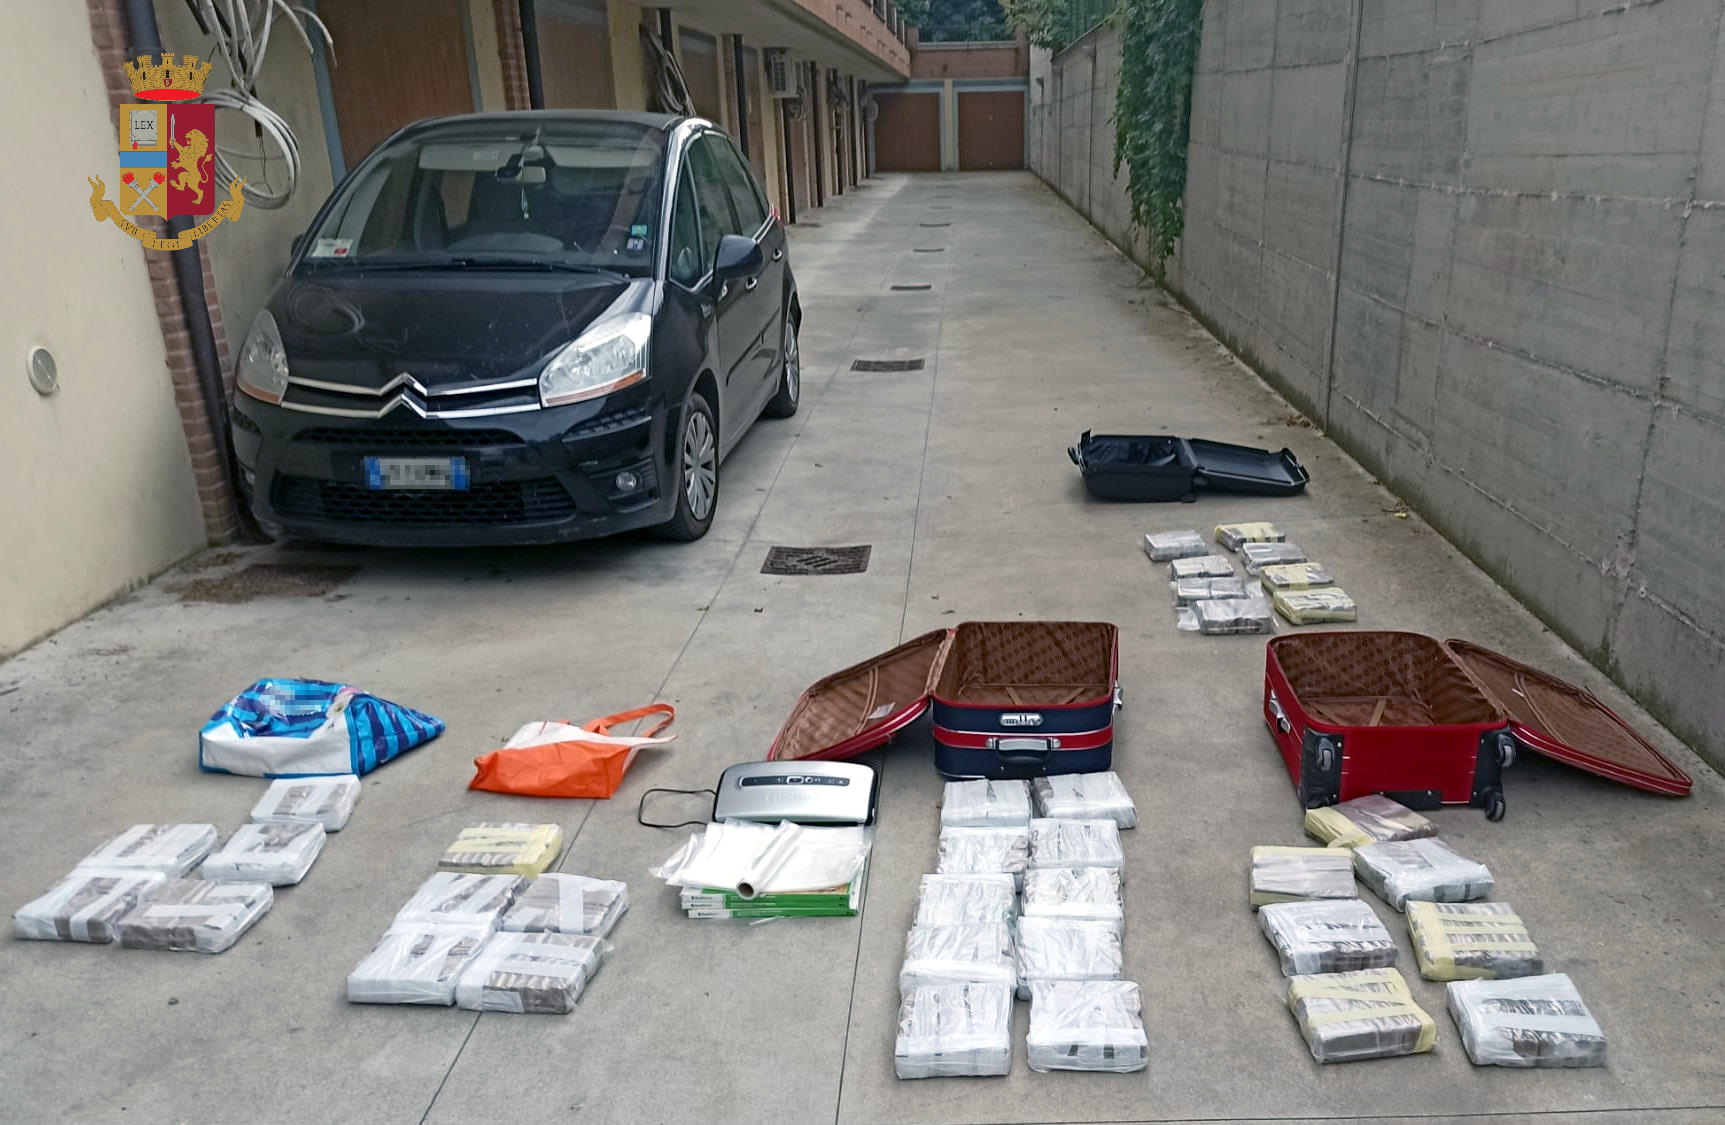 Milano, traffico internazionale di droga e riciclaggio con opere d’arte: la Polizia di stato arresta 31 persone